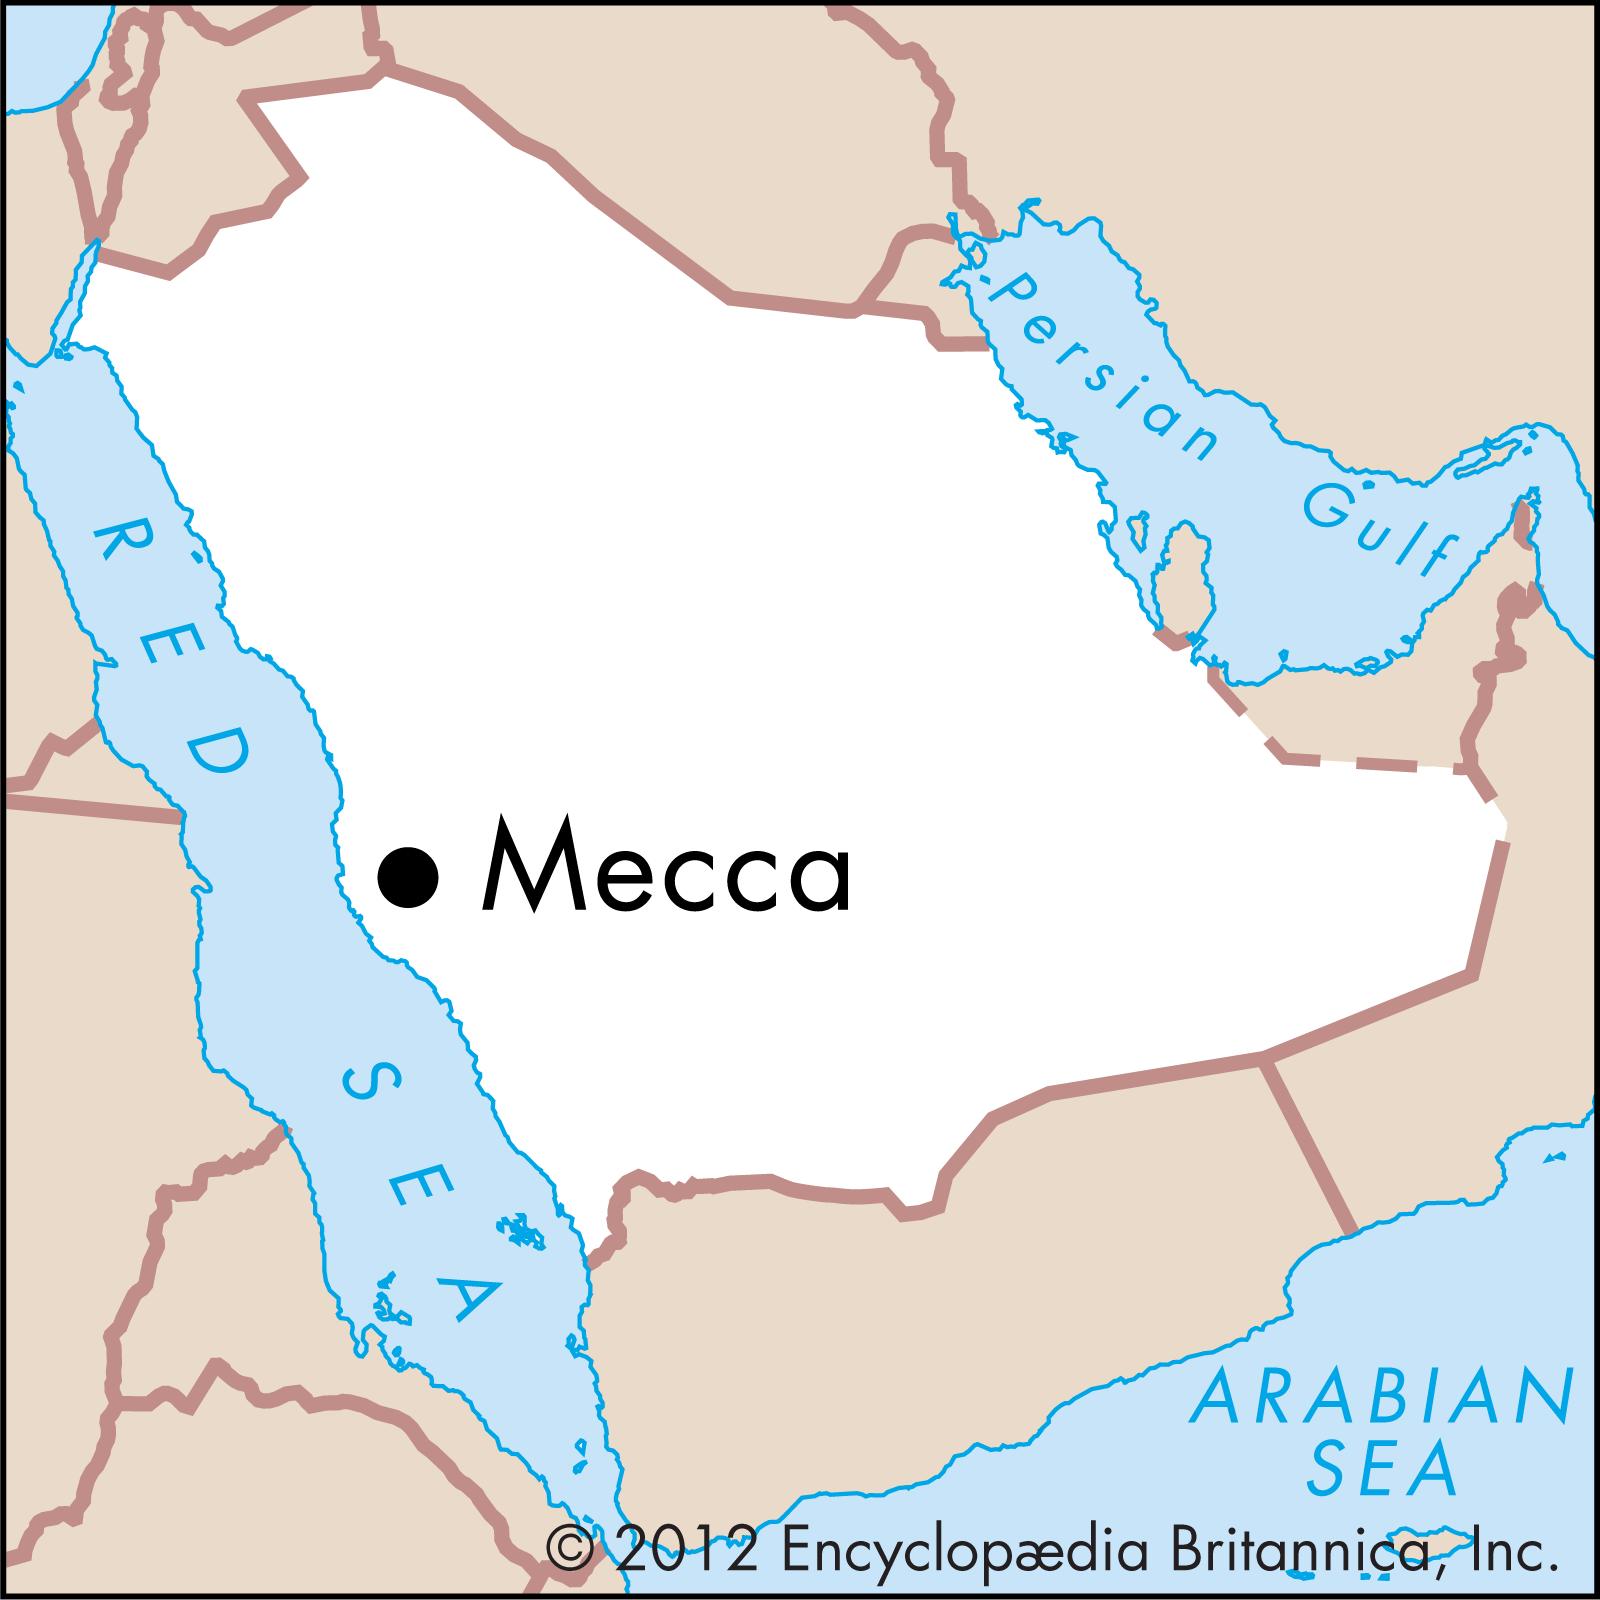 Мекка и медина на карте. Священные города мусульман Мекка и Медина на карте. Мекка на карте Саудовской Аравии. Города мусульман Мекка и Медина на карте.